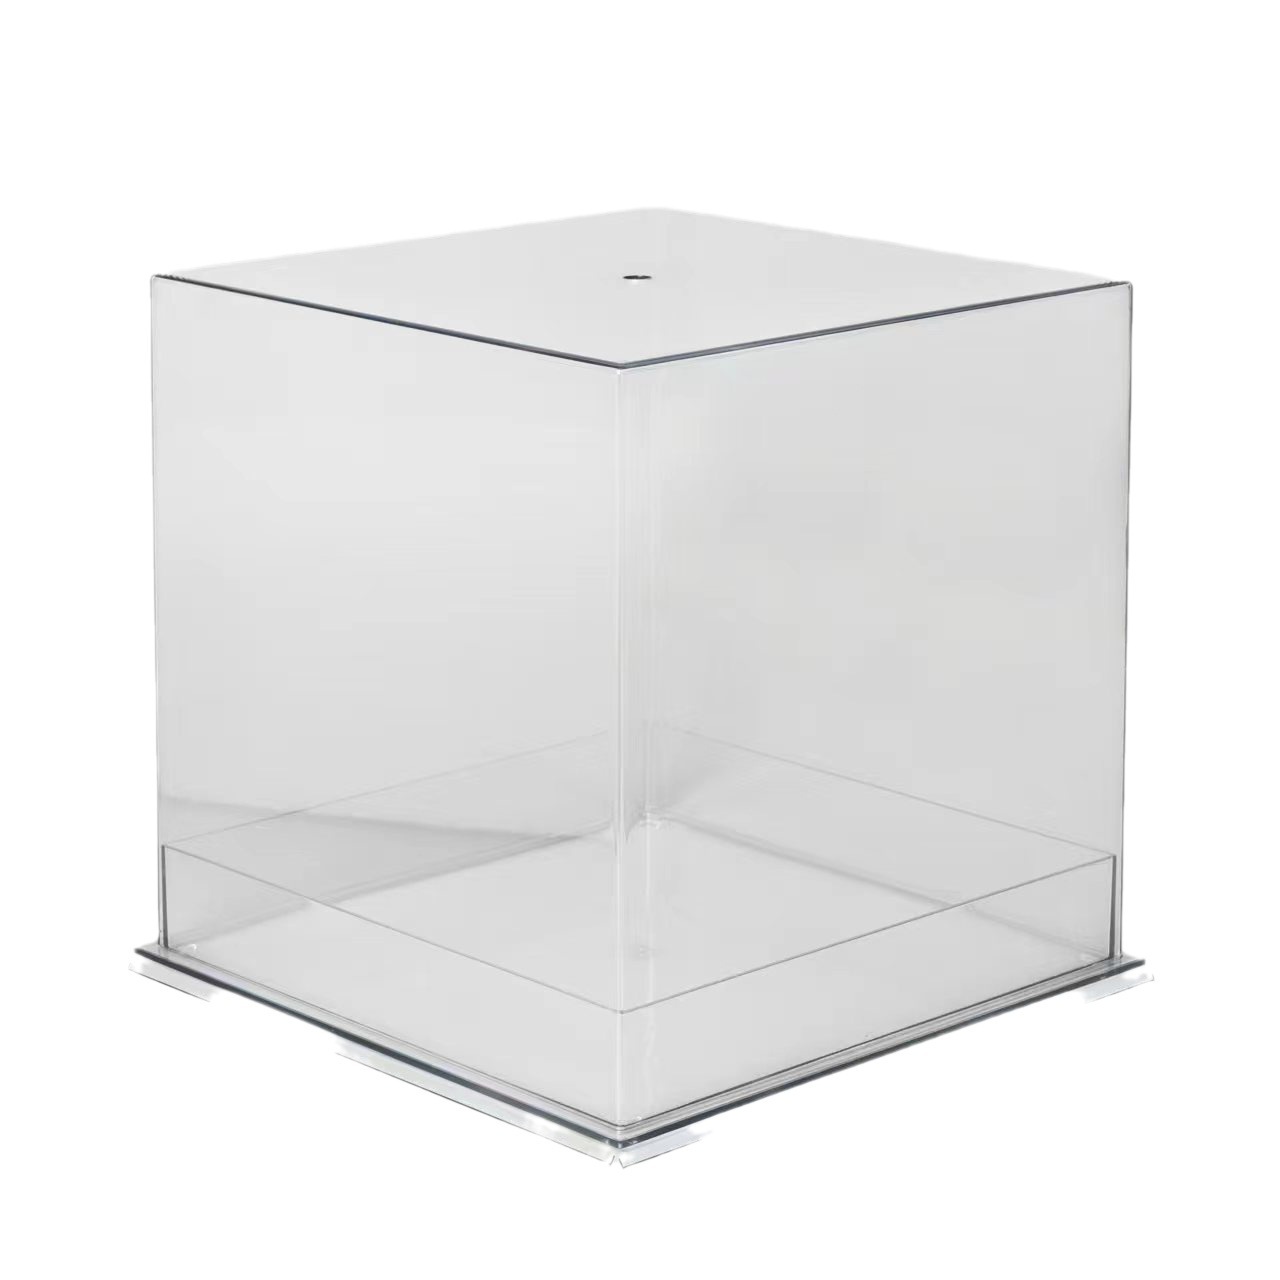 手捧花盒亚克力透明鲜花礼盒生日蛋糕盒正方形花束包装手提水晶盒白底实物图